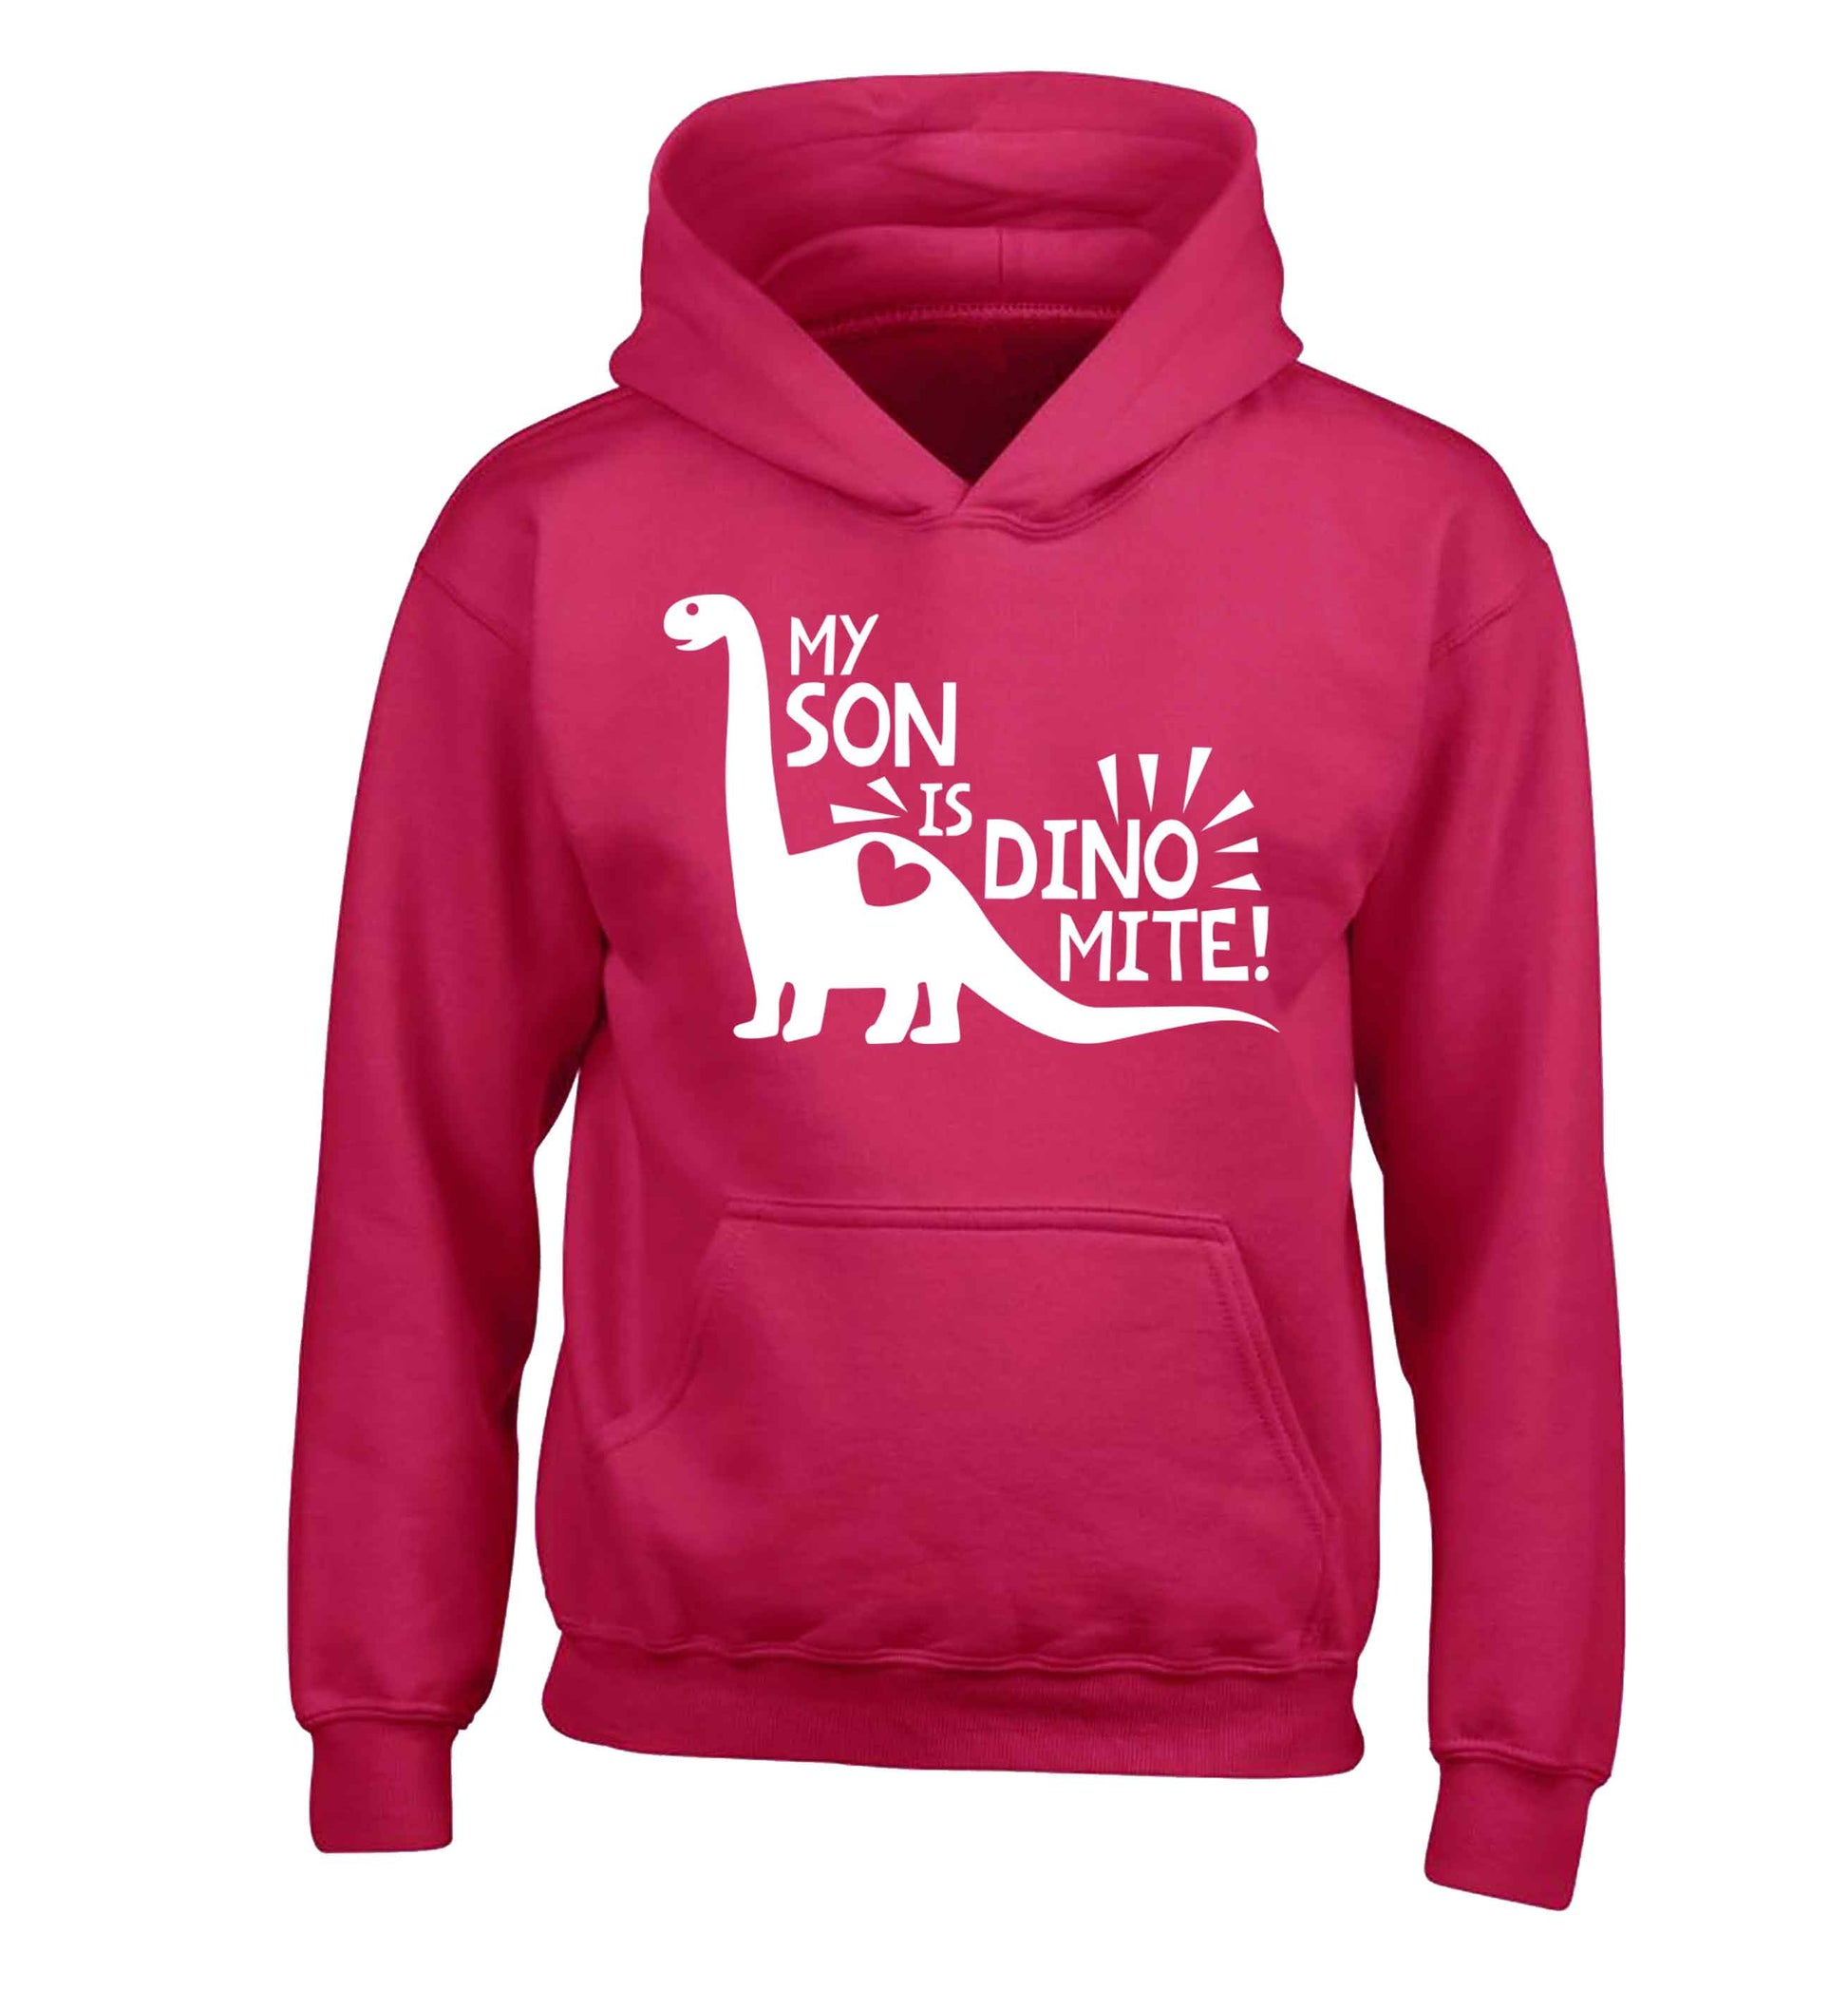 My son is dinomite! children's pink hoodie 12-13 Years